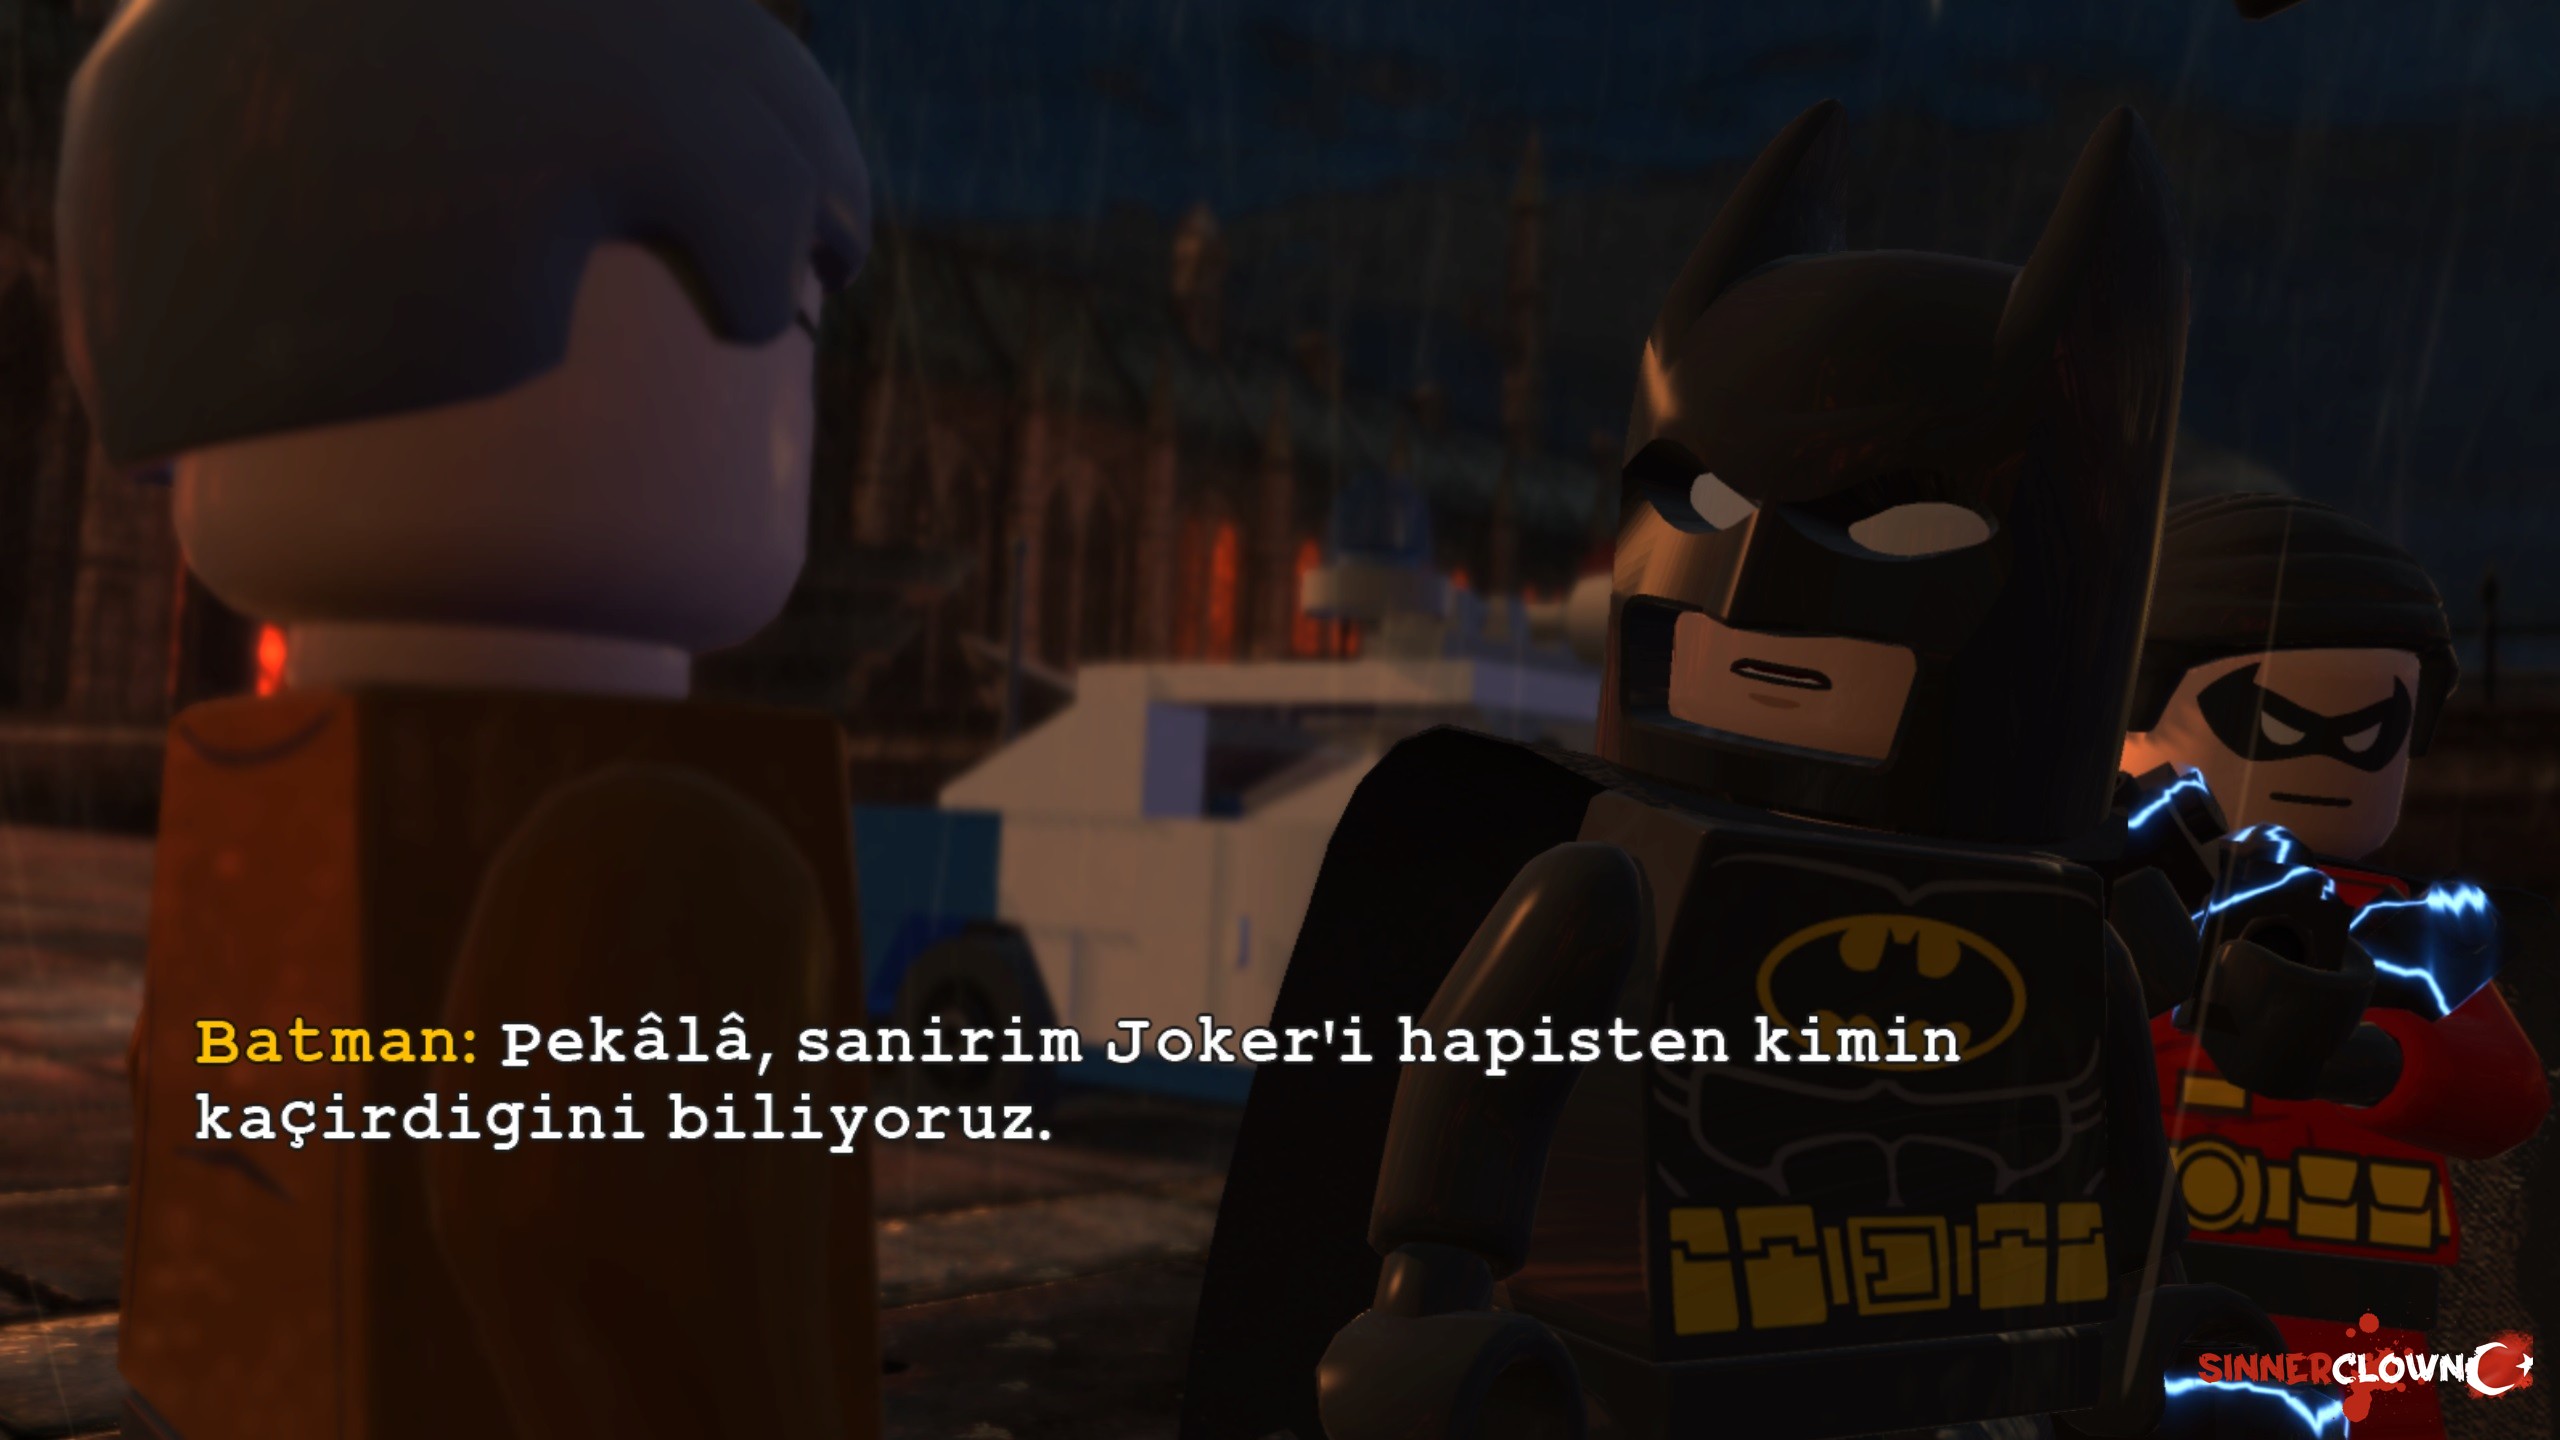 LEGO_Batman2_8.jpg